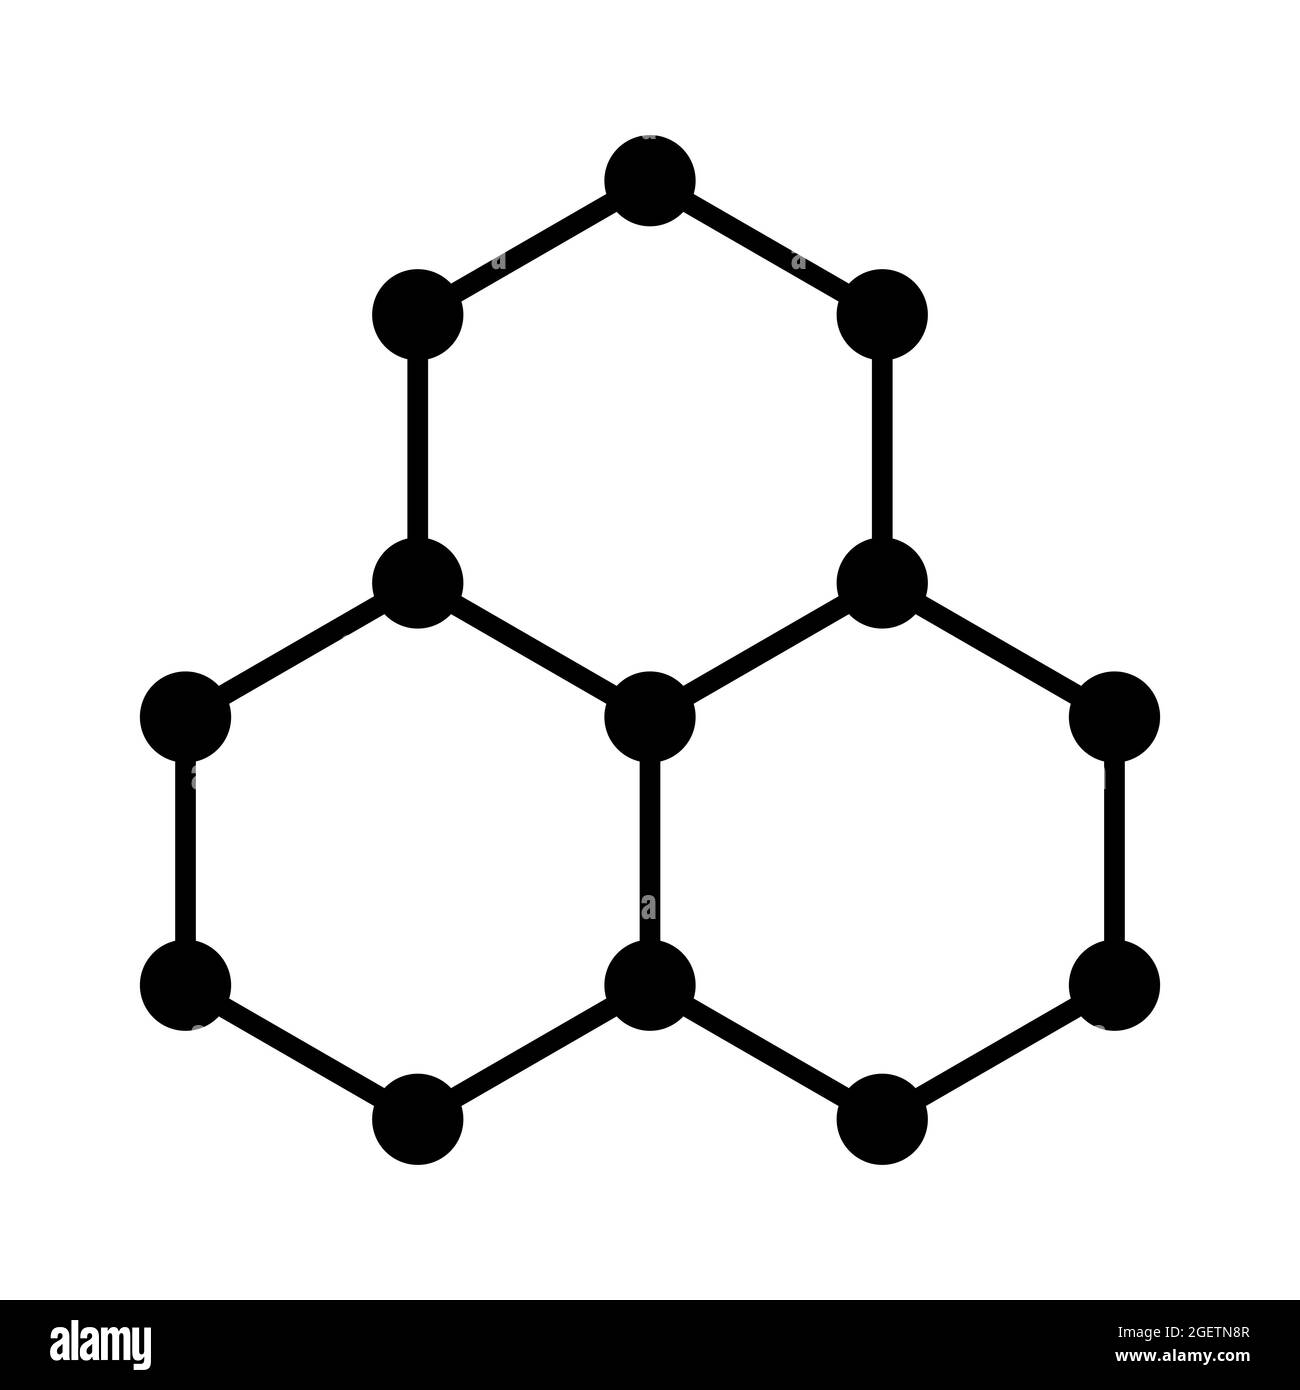 Graphen-Symbol, schematische molekulare Struktur von Graphen, Allotrope aus Kohlenstoff, bestehend aus einer einzigen Schicht von Kohlenstoffatomen in einem sechseckigen Gitter. Stockfoto